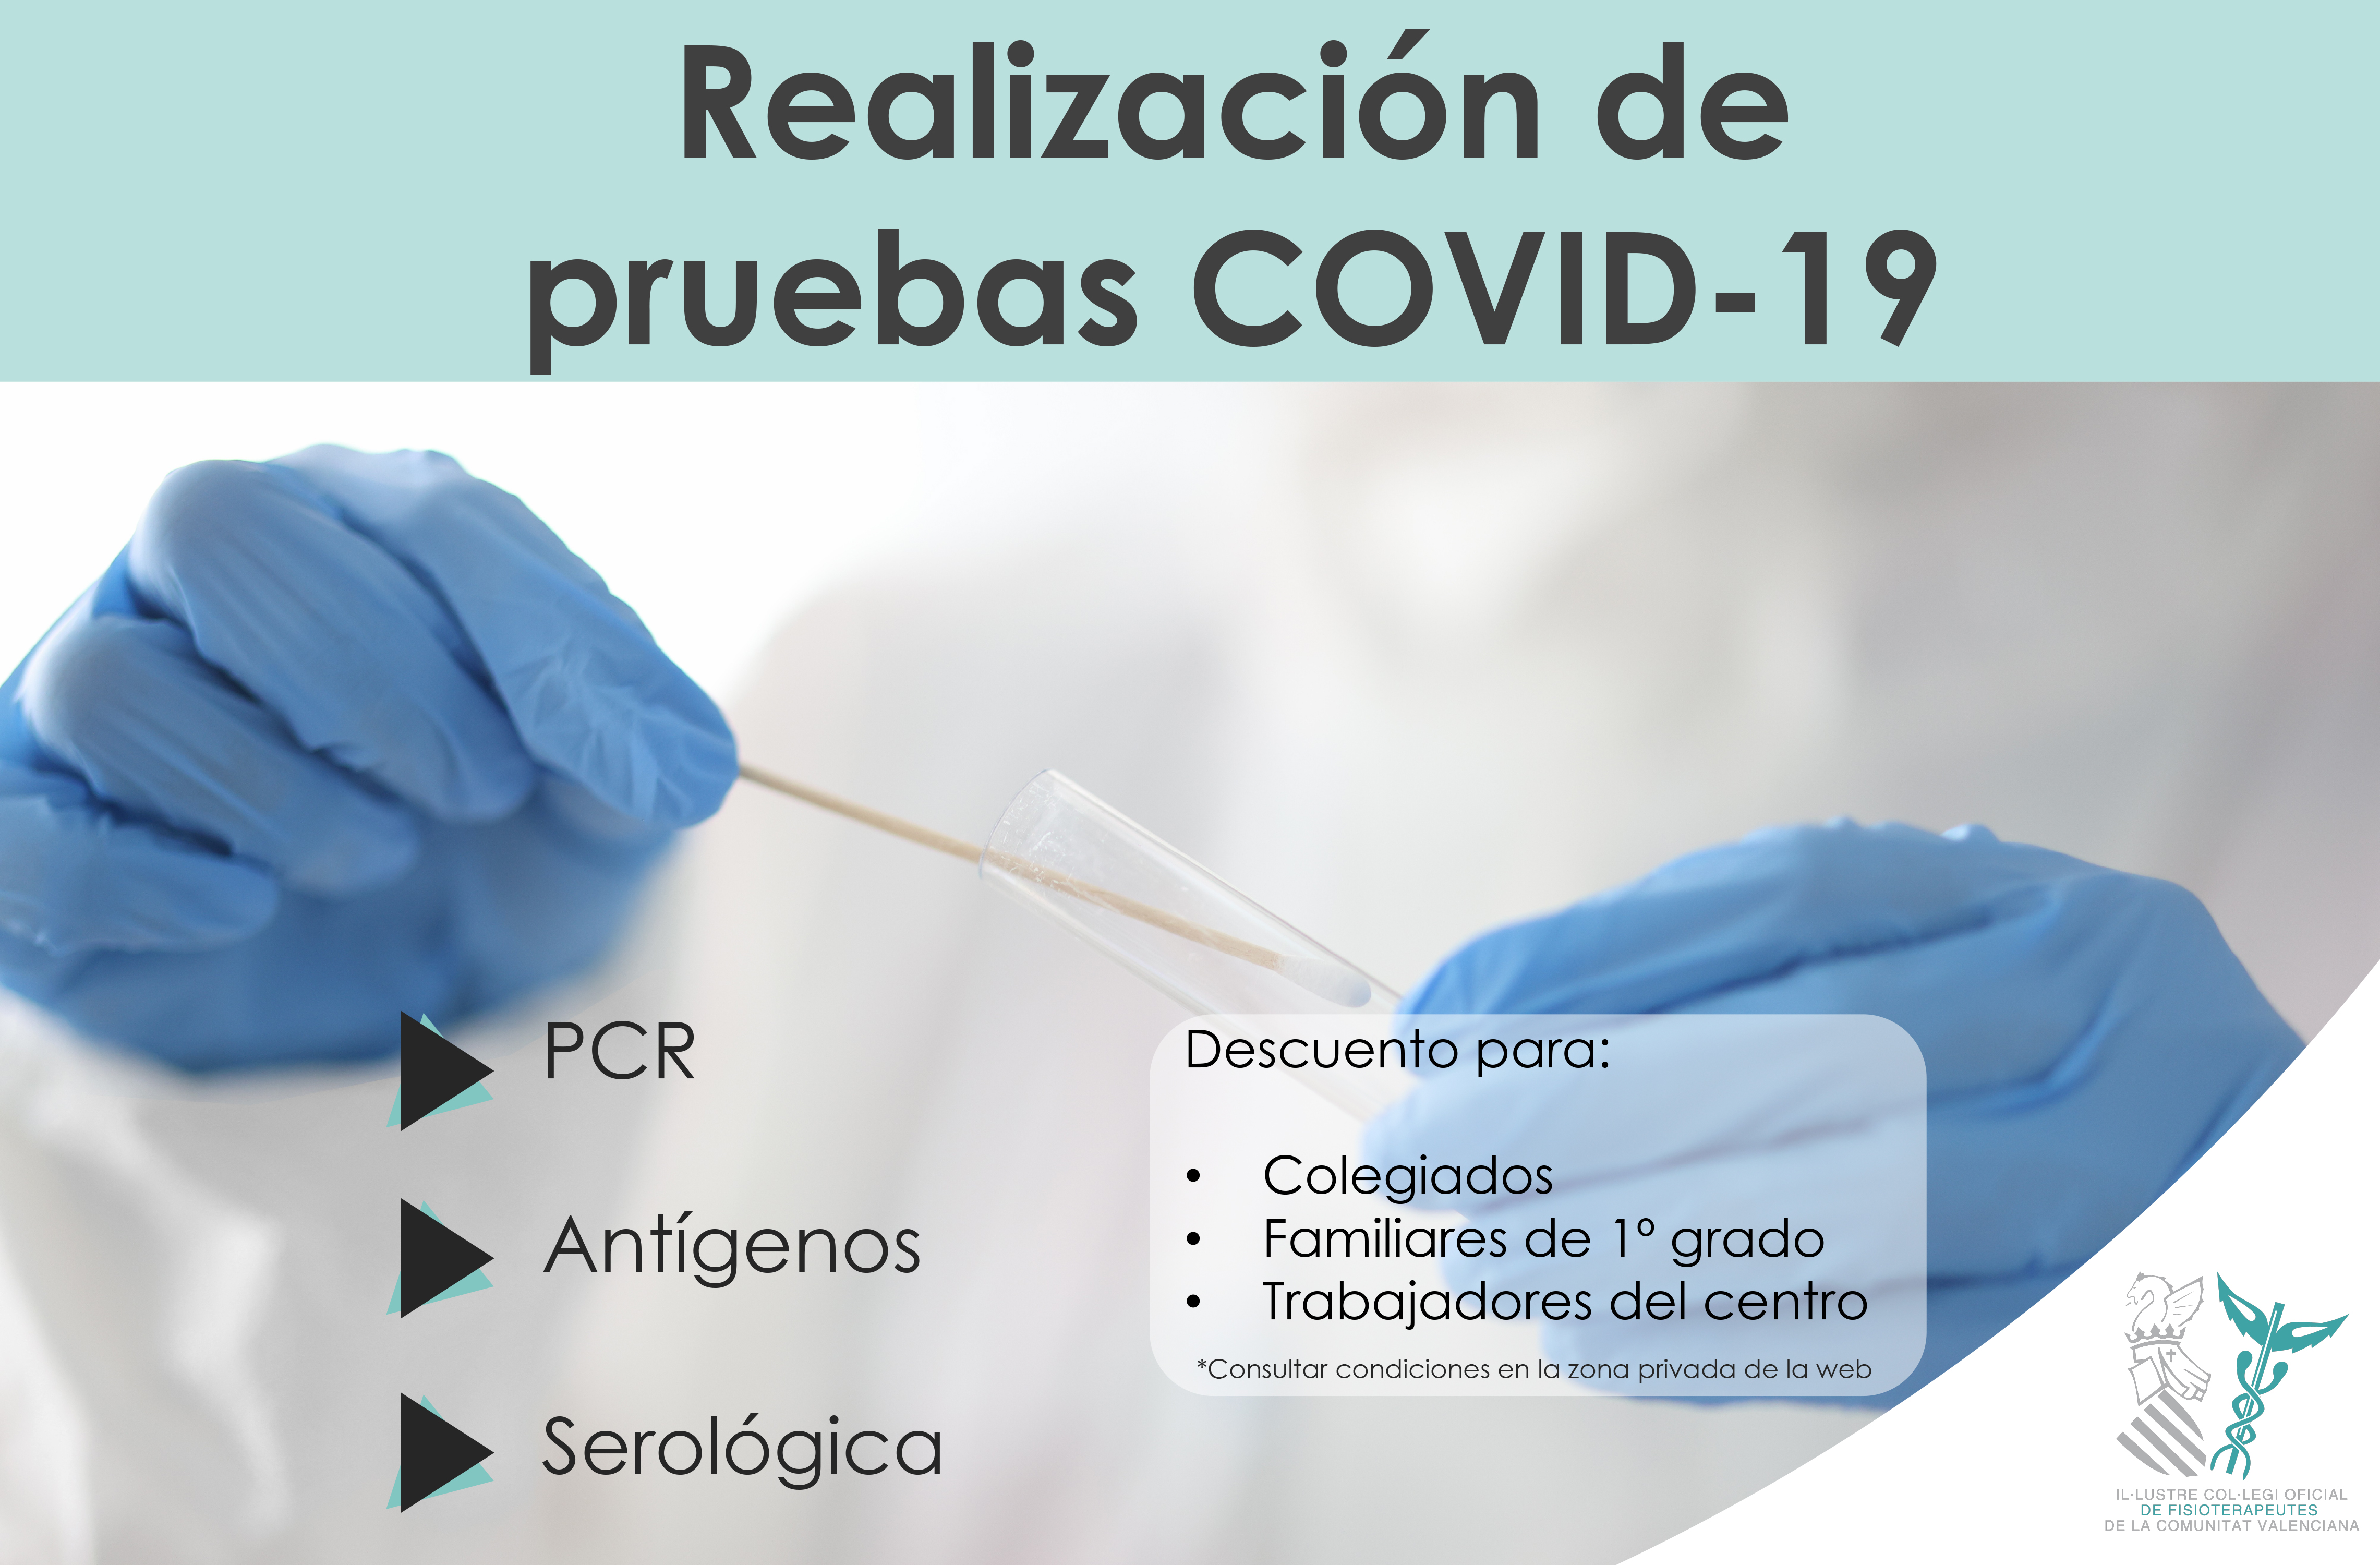 El ICOFCV cierra condiciones especiales con centros para la realización de pruebas de COVID-19